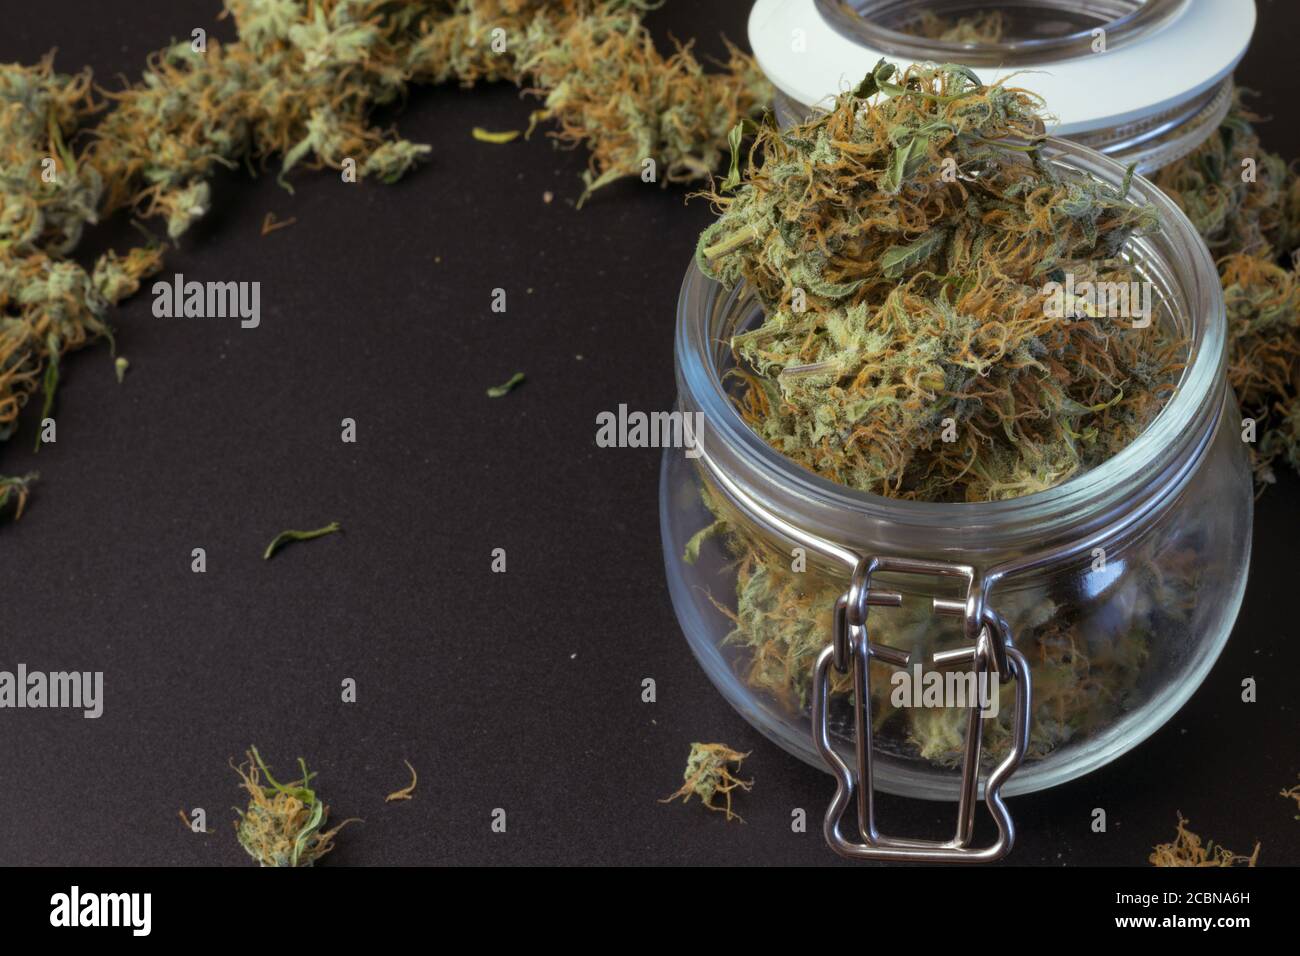 Giara di cannabis medica con copia di sfondo con marijuana. THC uso legale di droga nel settore sanitario. Industria delle erbacce Foto Stock